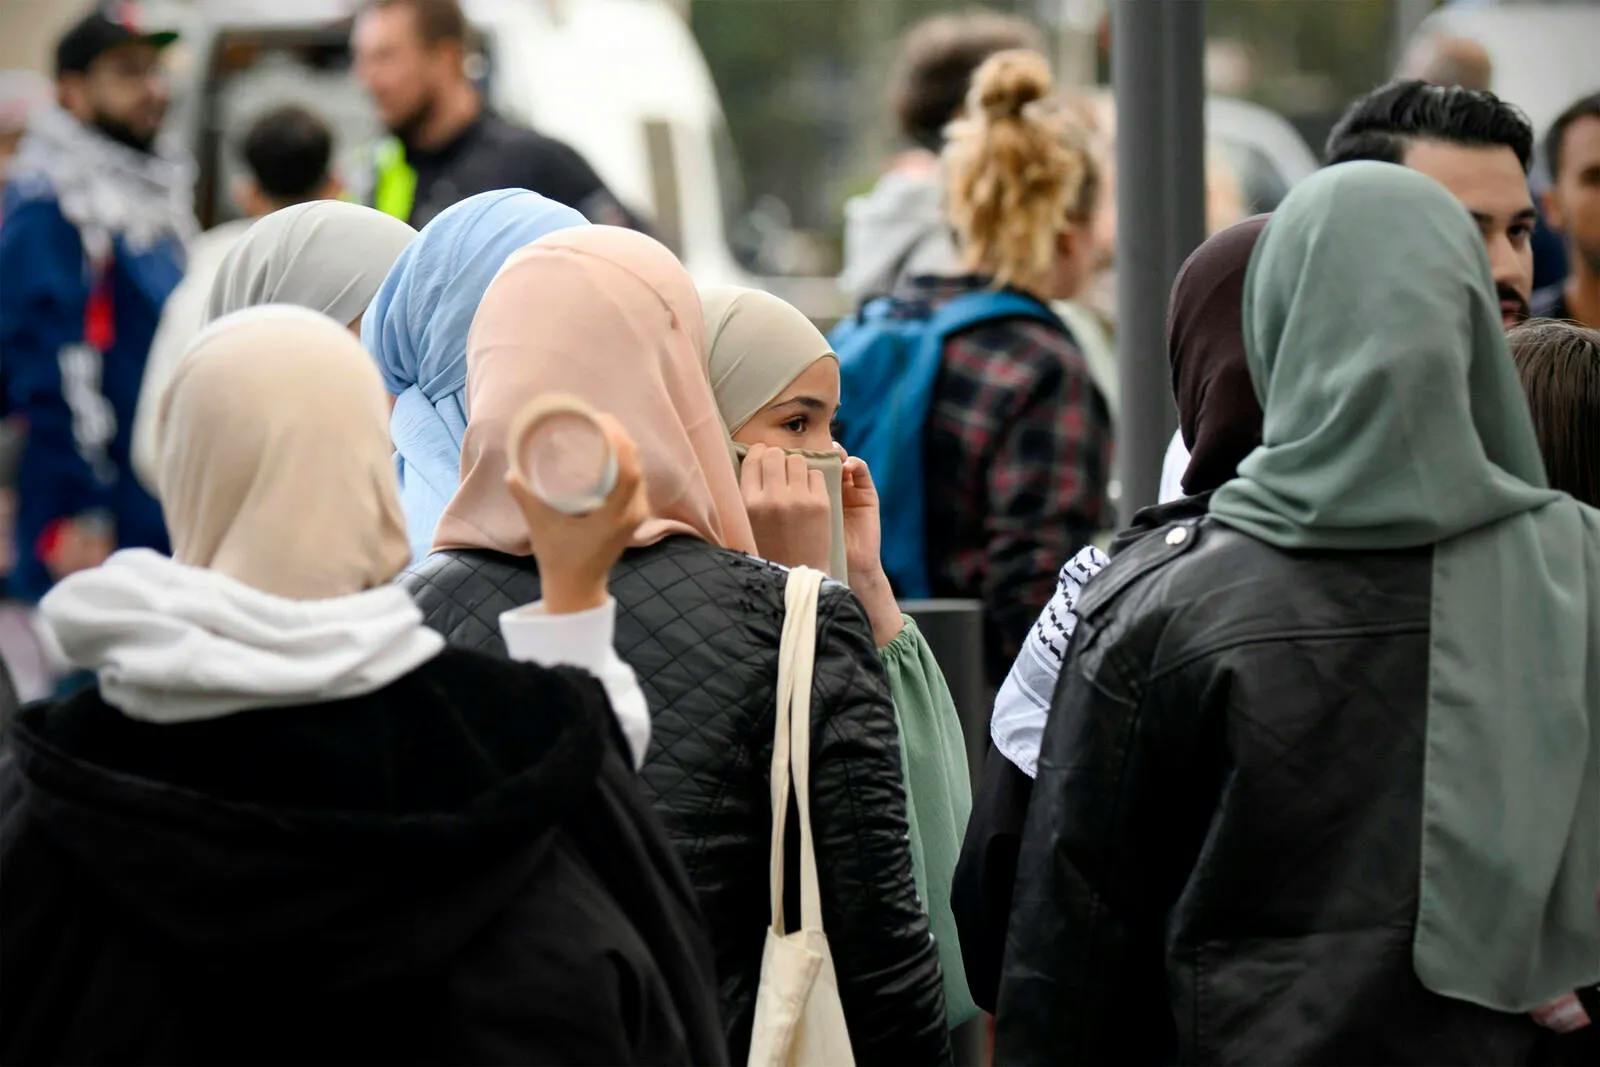 Mädchen aus Österreich könnte in „Scharia-Keller“ festgehalten werden